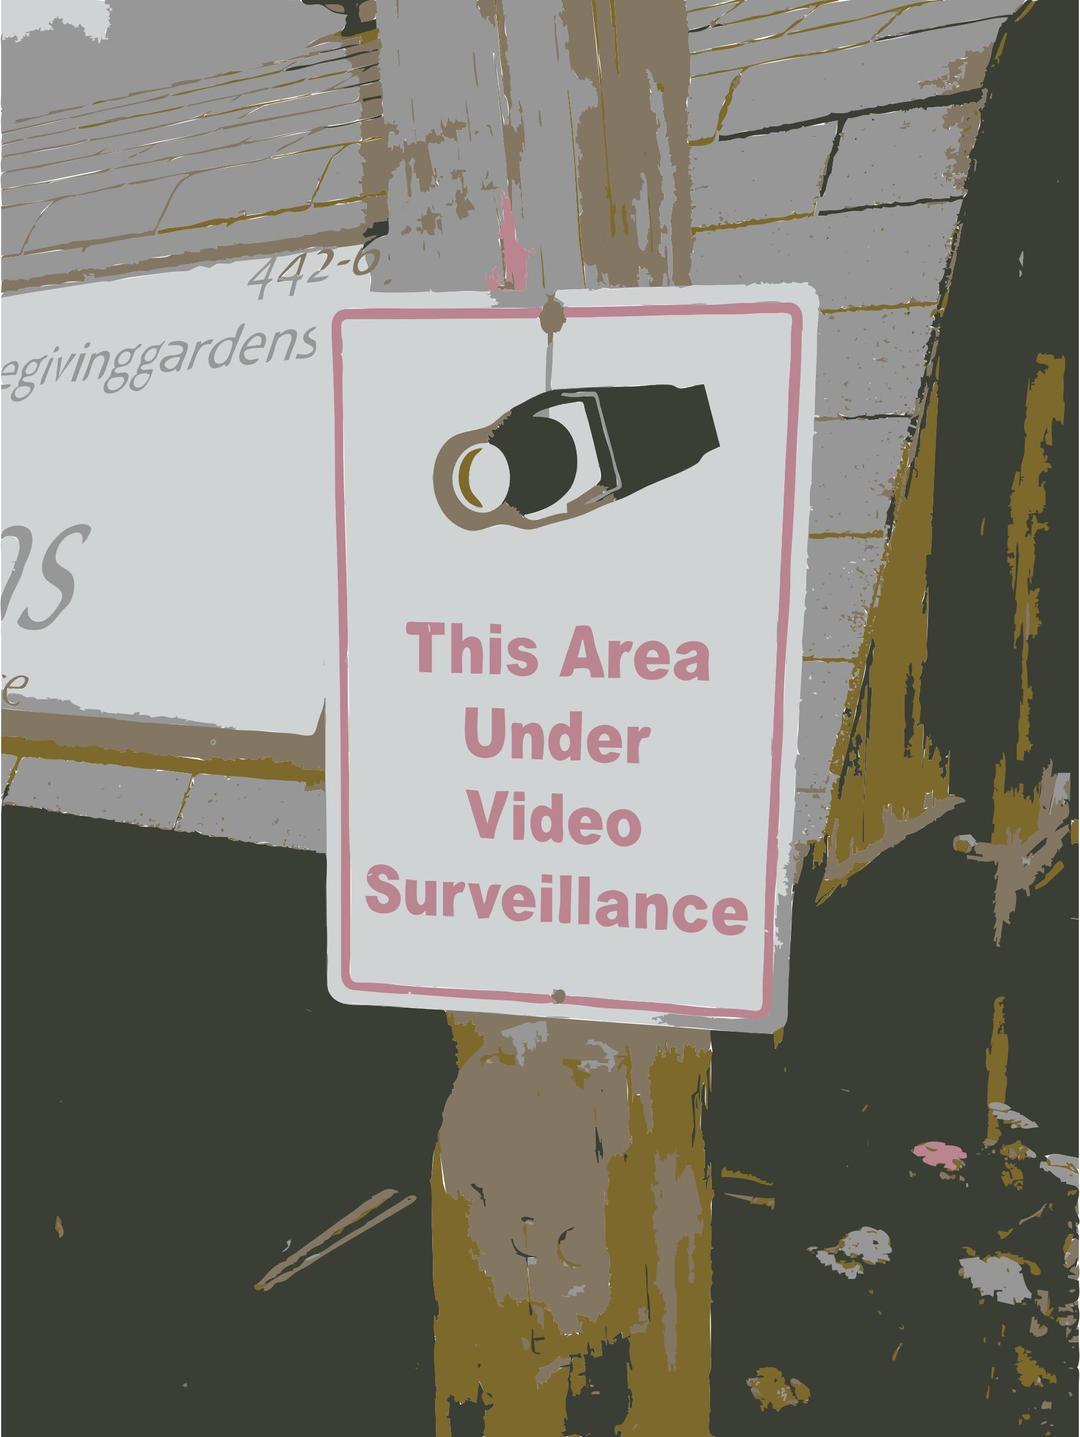 More video surveillance png transparent